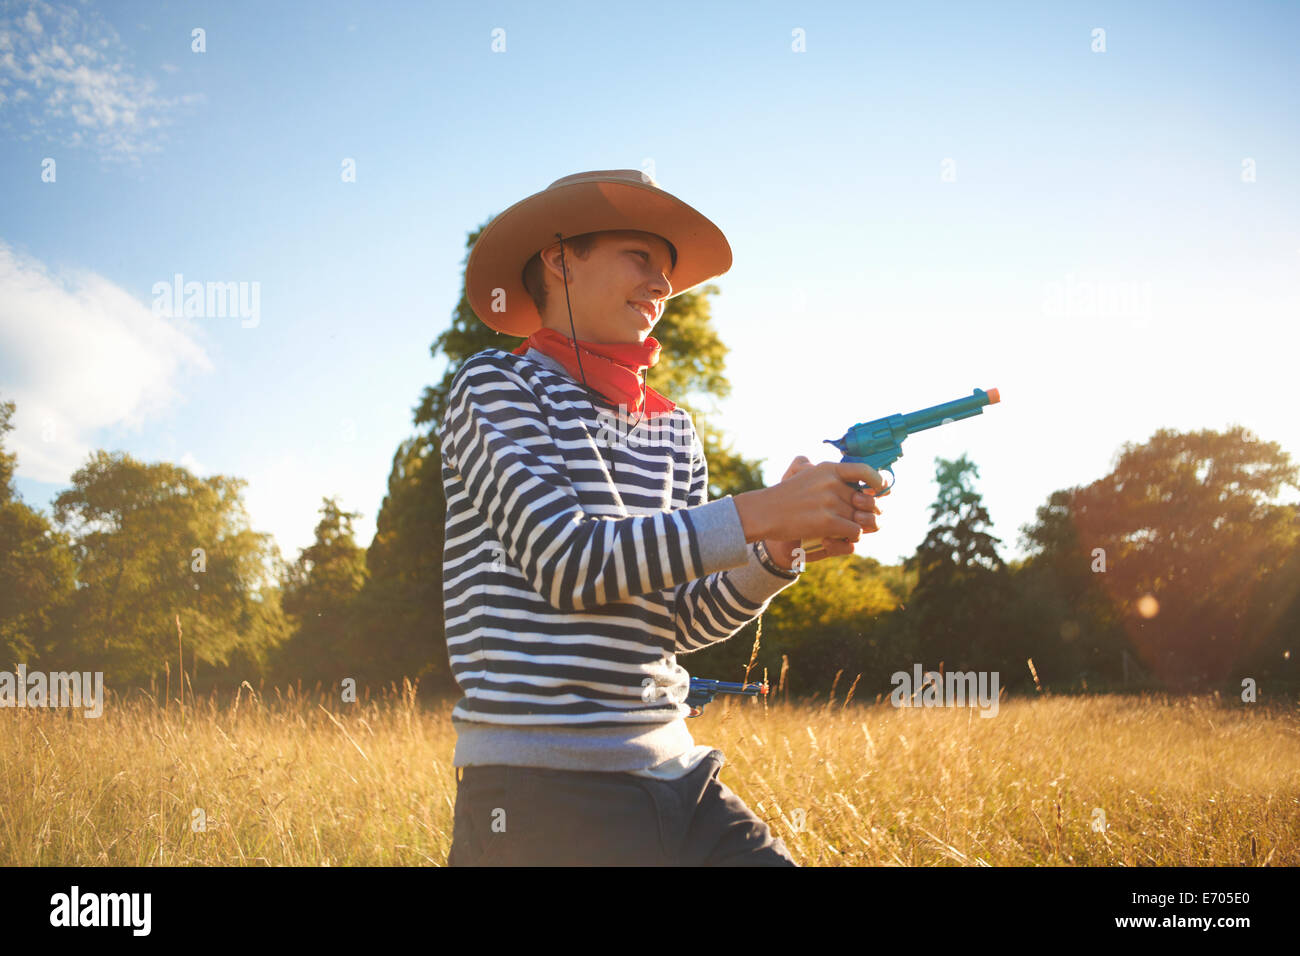 Jeune garçon habillé en cow-boy, holding toy gun Banque D'Images